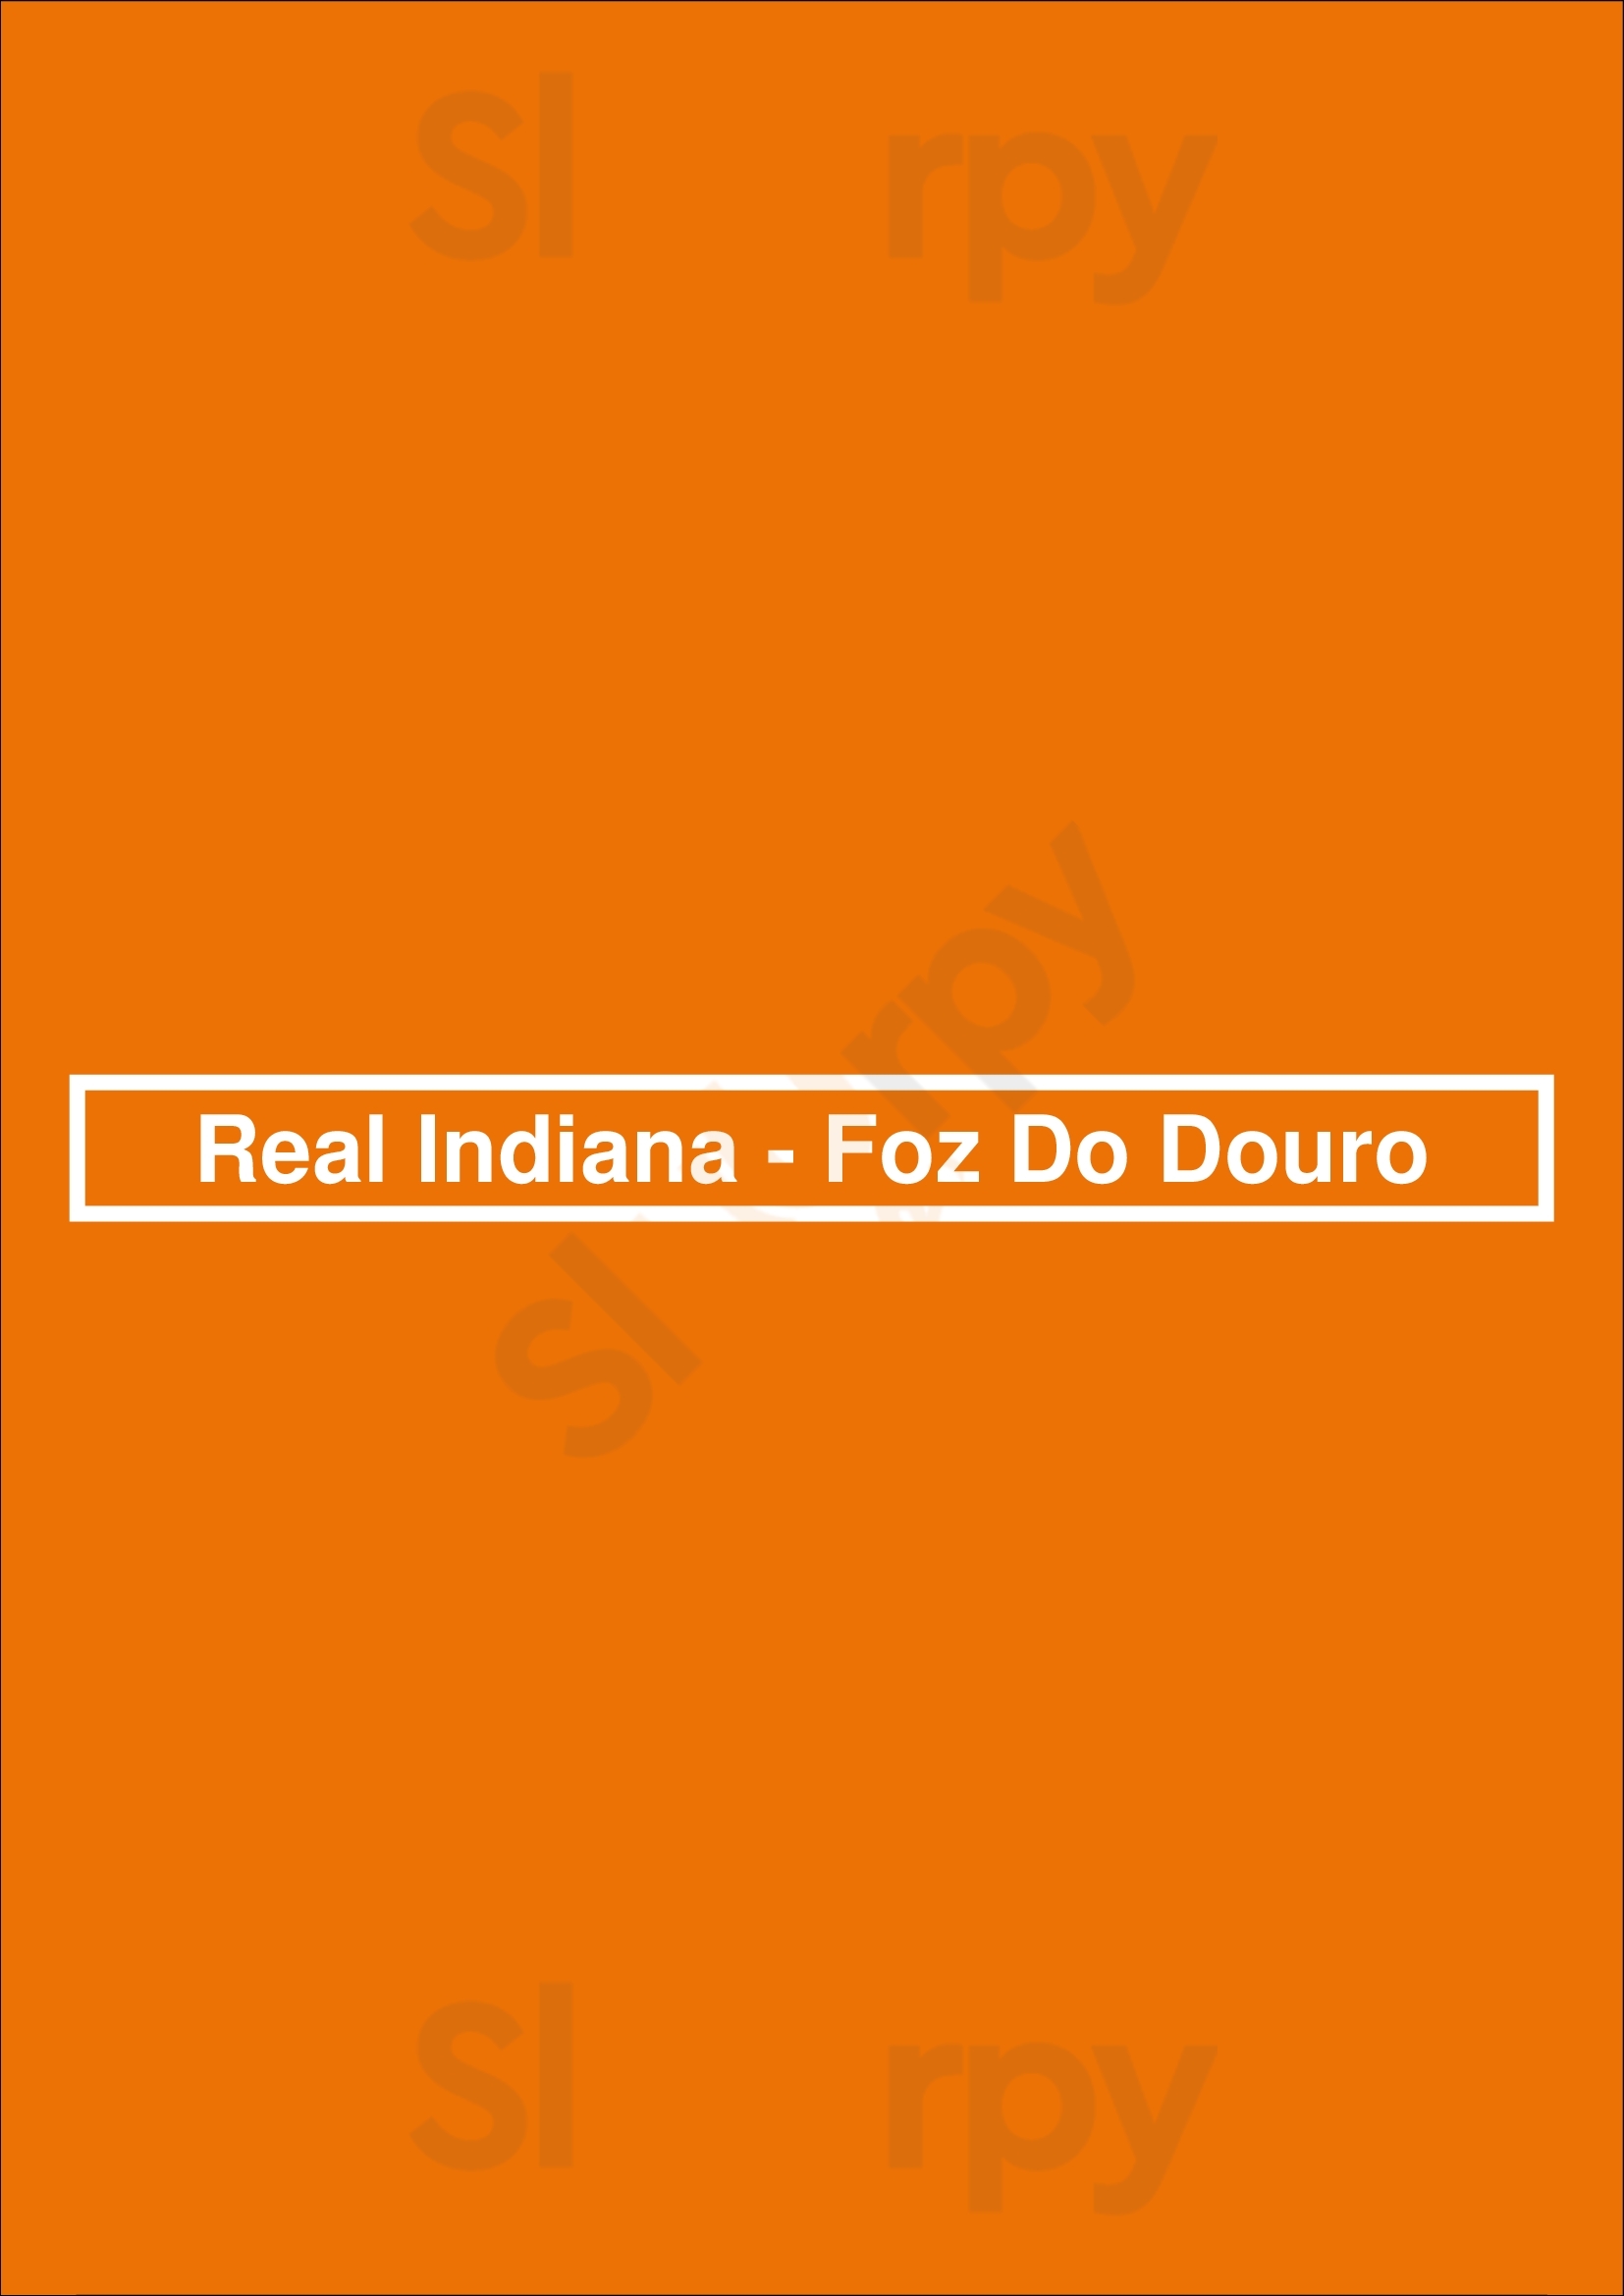 Real Indiana - Foz Do Douro Porto Menu - 1